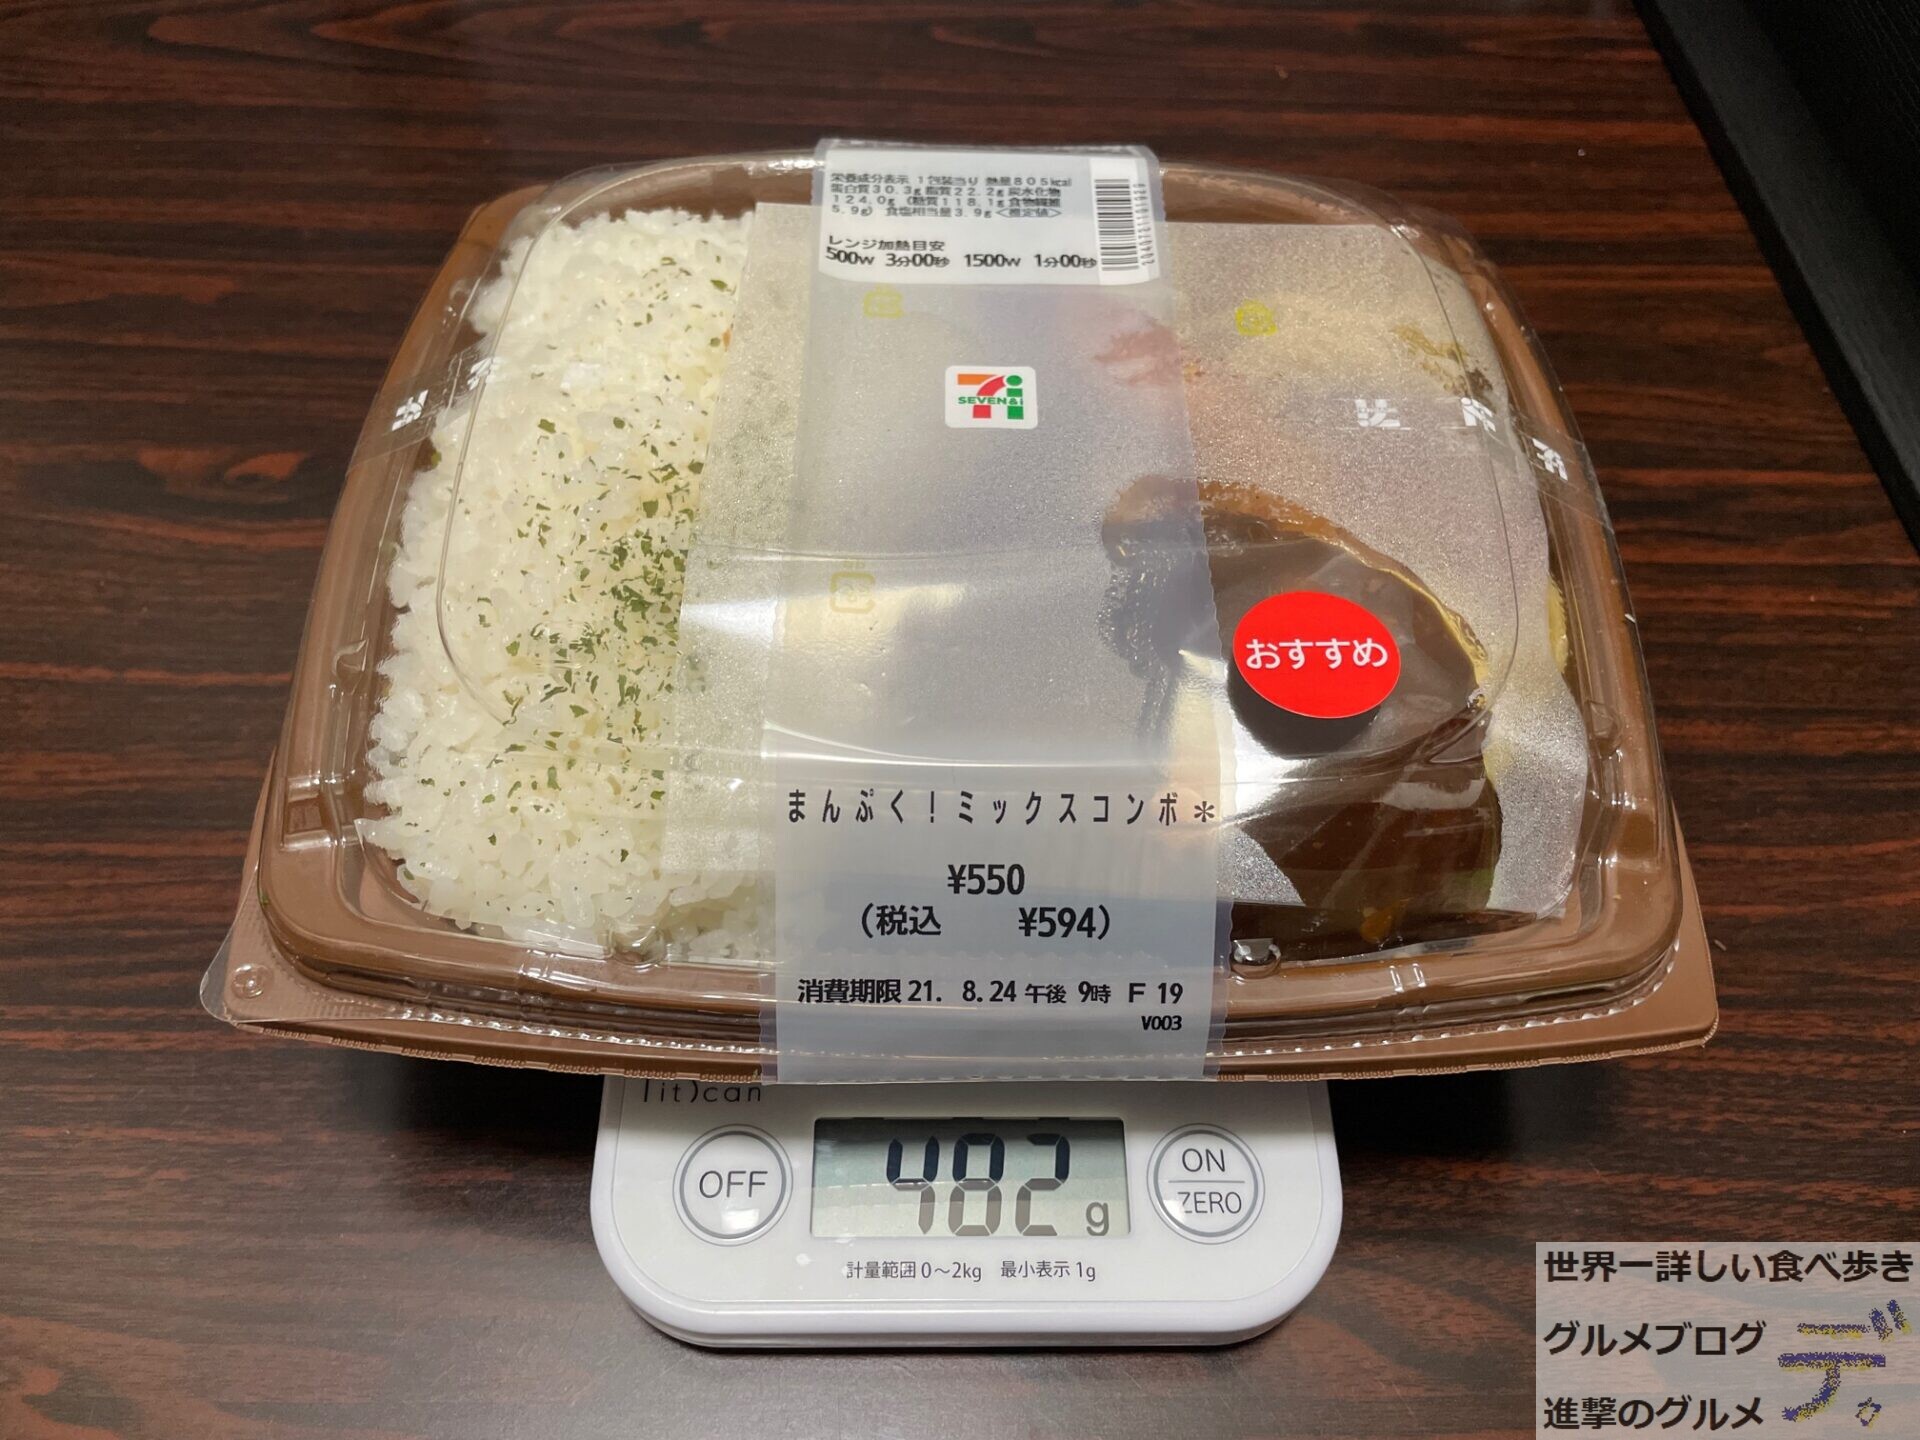 ハンバーグ エビフライ セブン イレブンの まんぷく弁当 を実食レポ 進撃のグルメ Yahoo Japan クリエイターズプログラム